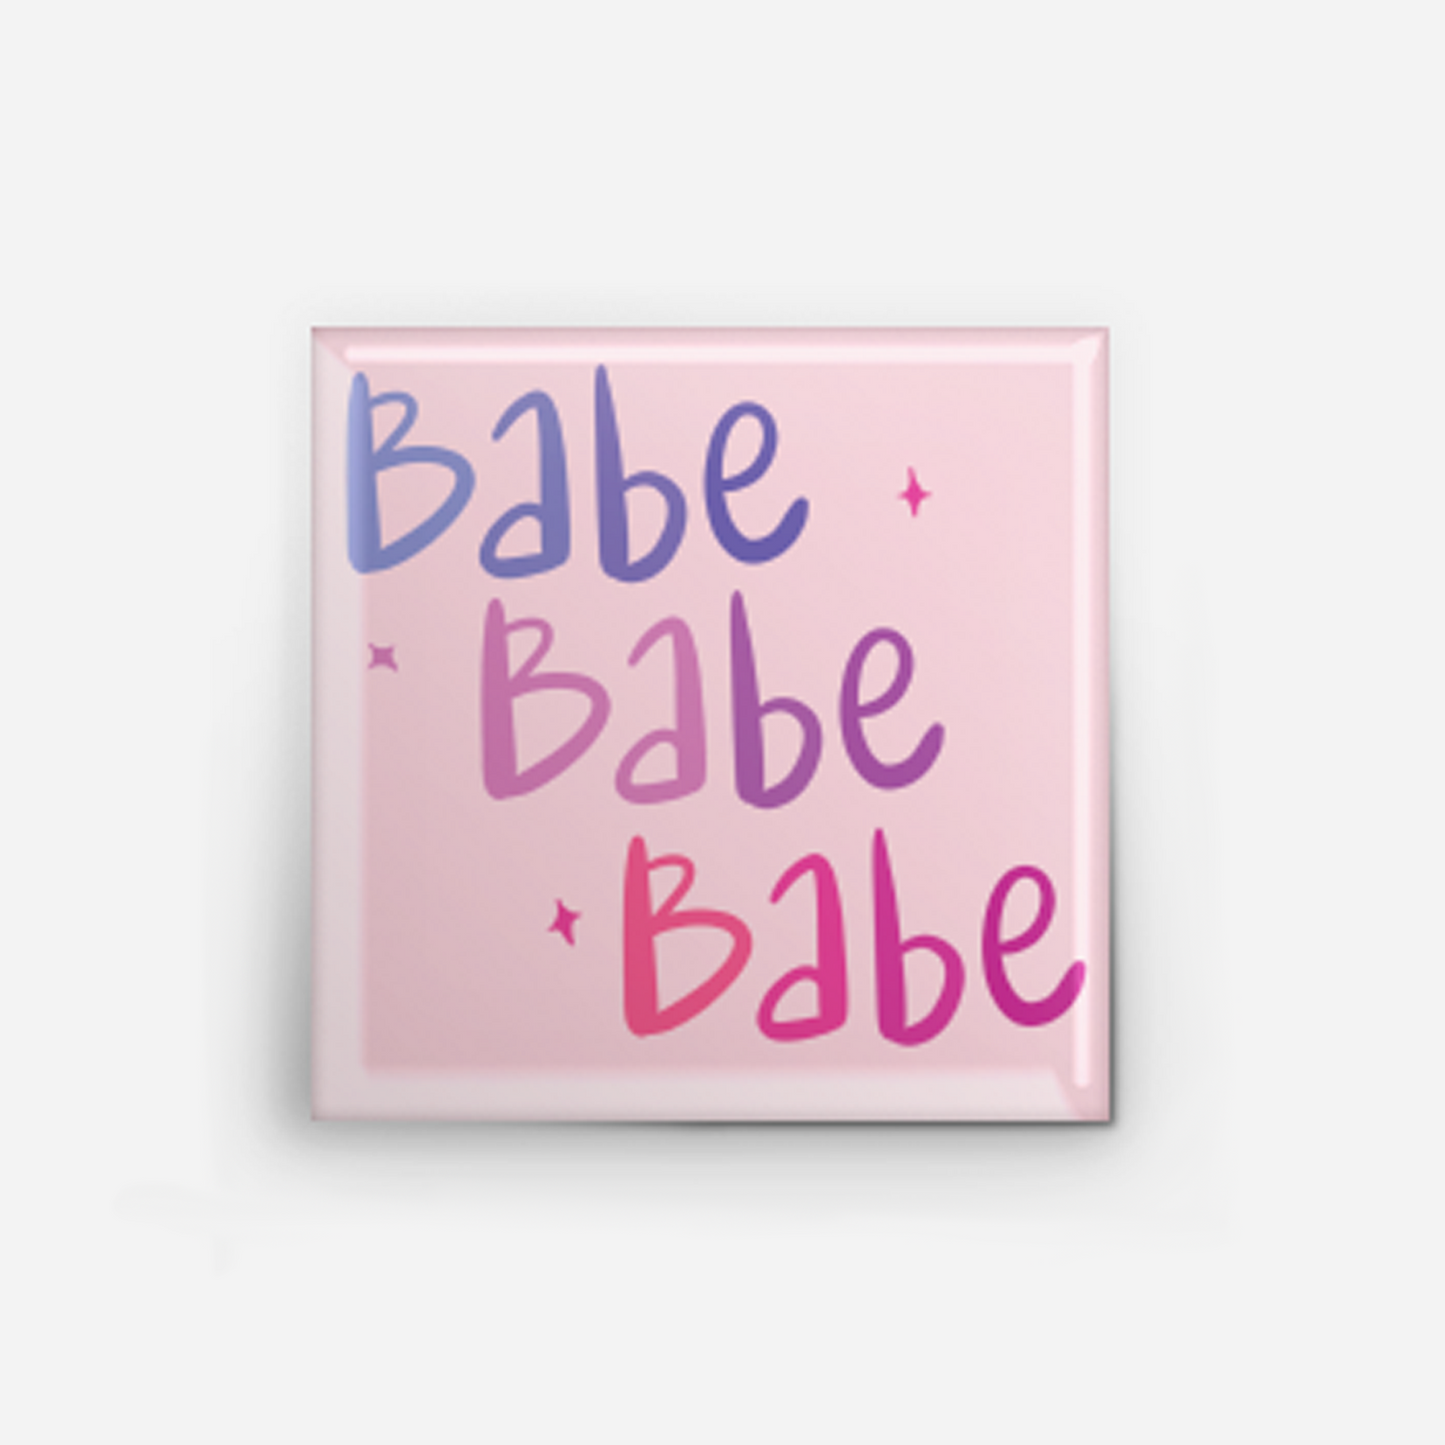 Babe Babe Babe Pin